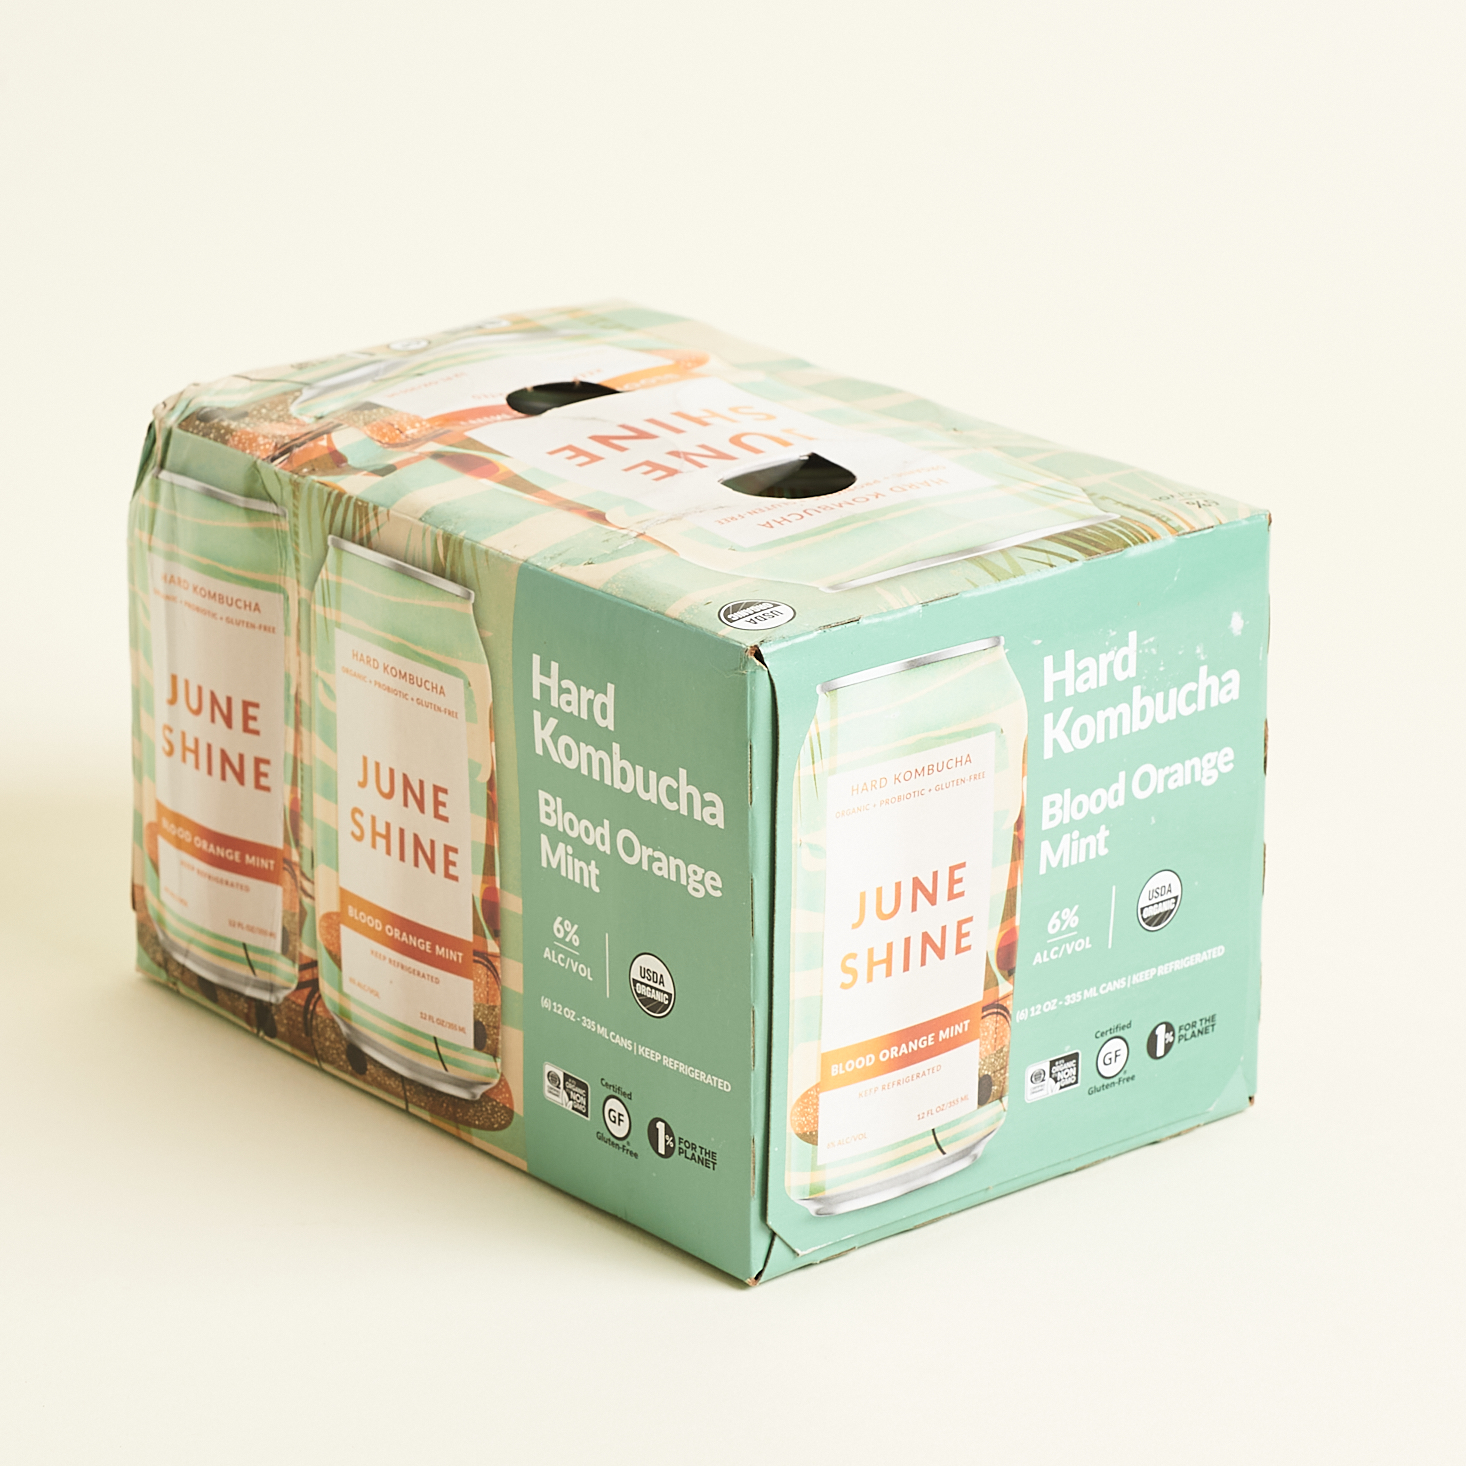 Box Front of Blood Orange Mint for JuneShine Sampler Pack